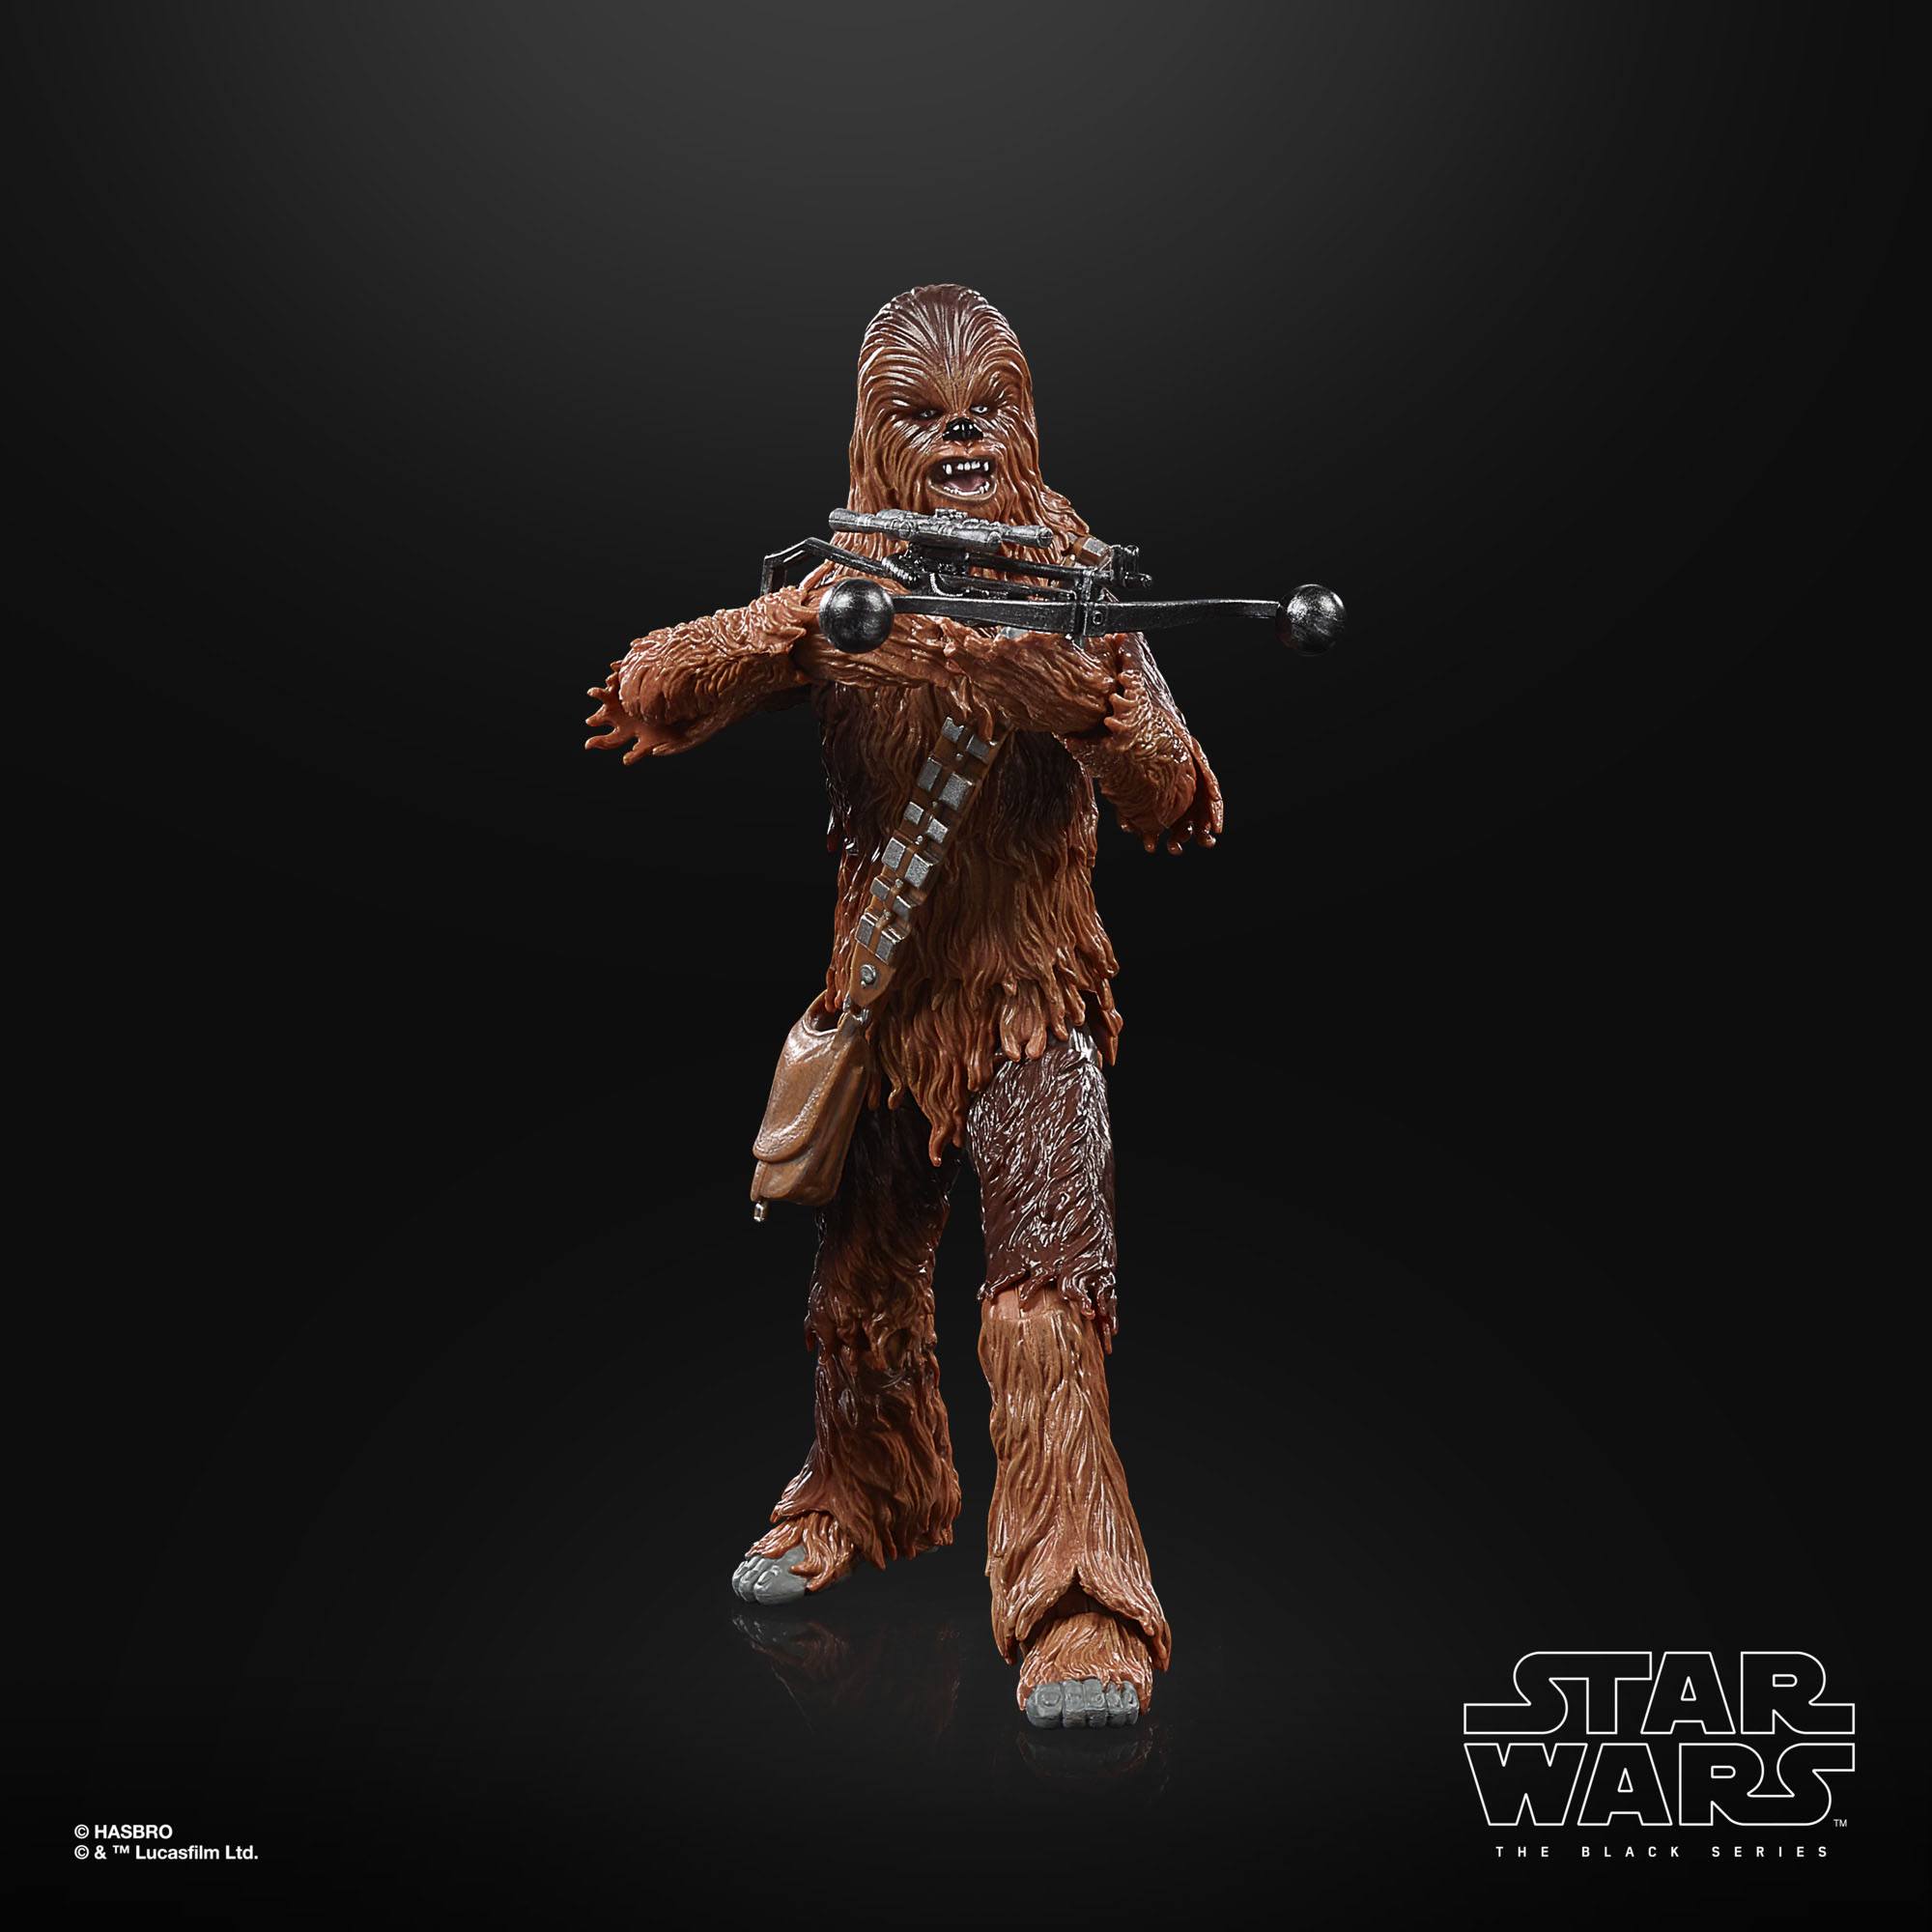 Star Wars The Black Series Archive Chewbacca F43715L00 5010993981816